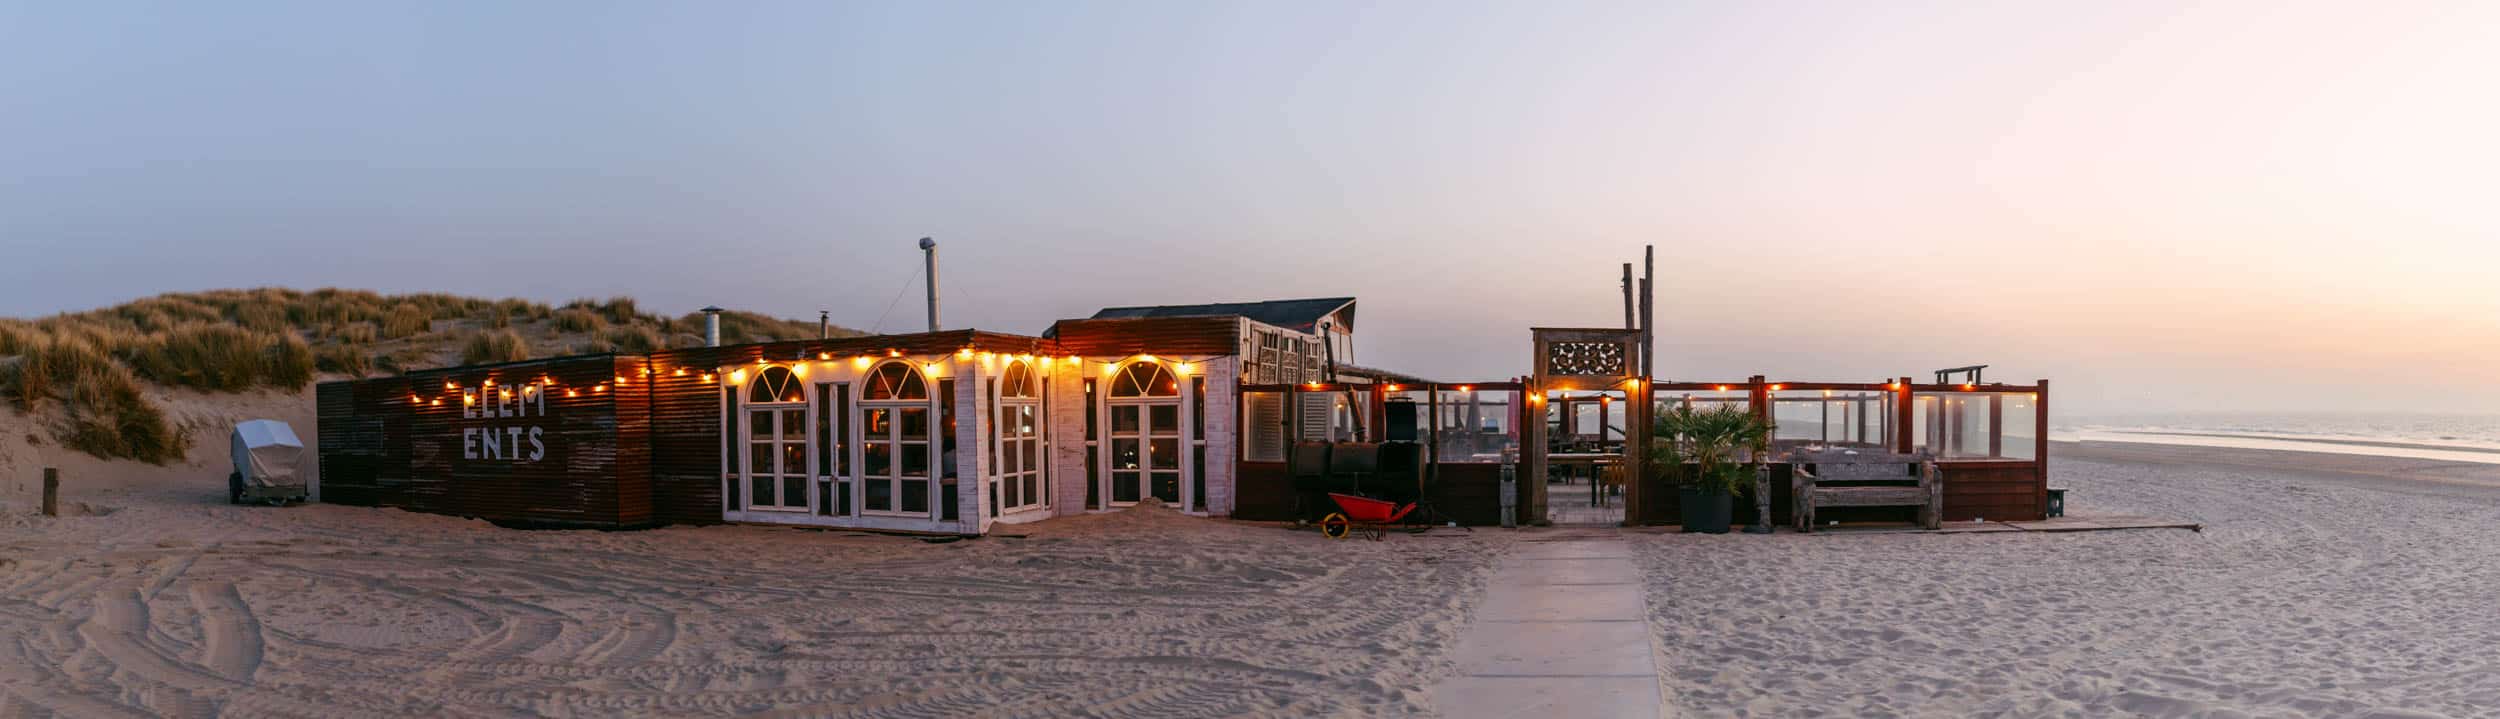 Elements Beach - A restaurant on the beach at dusk.